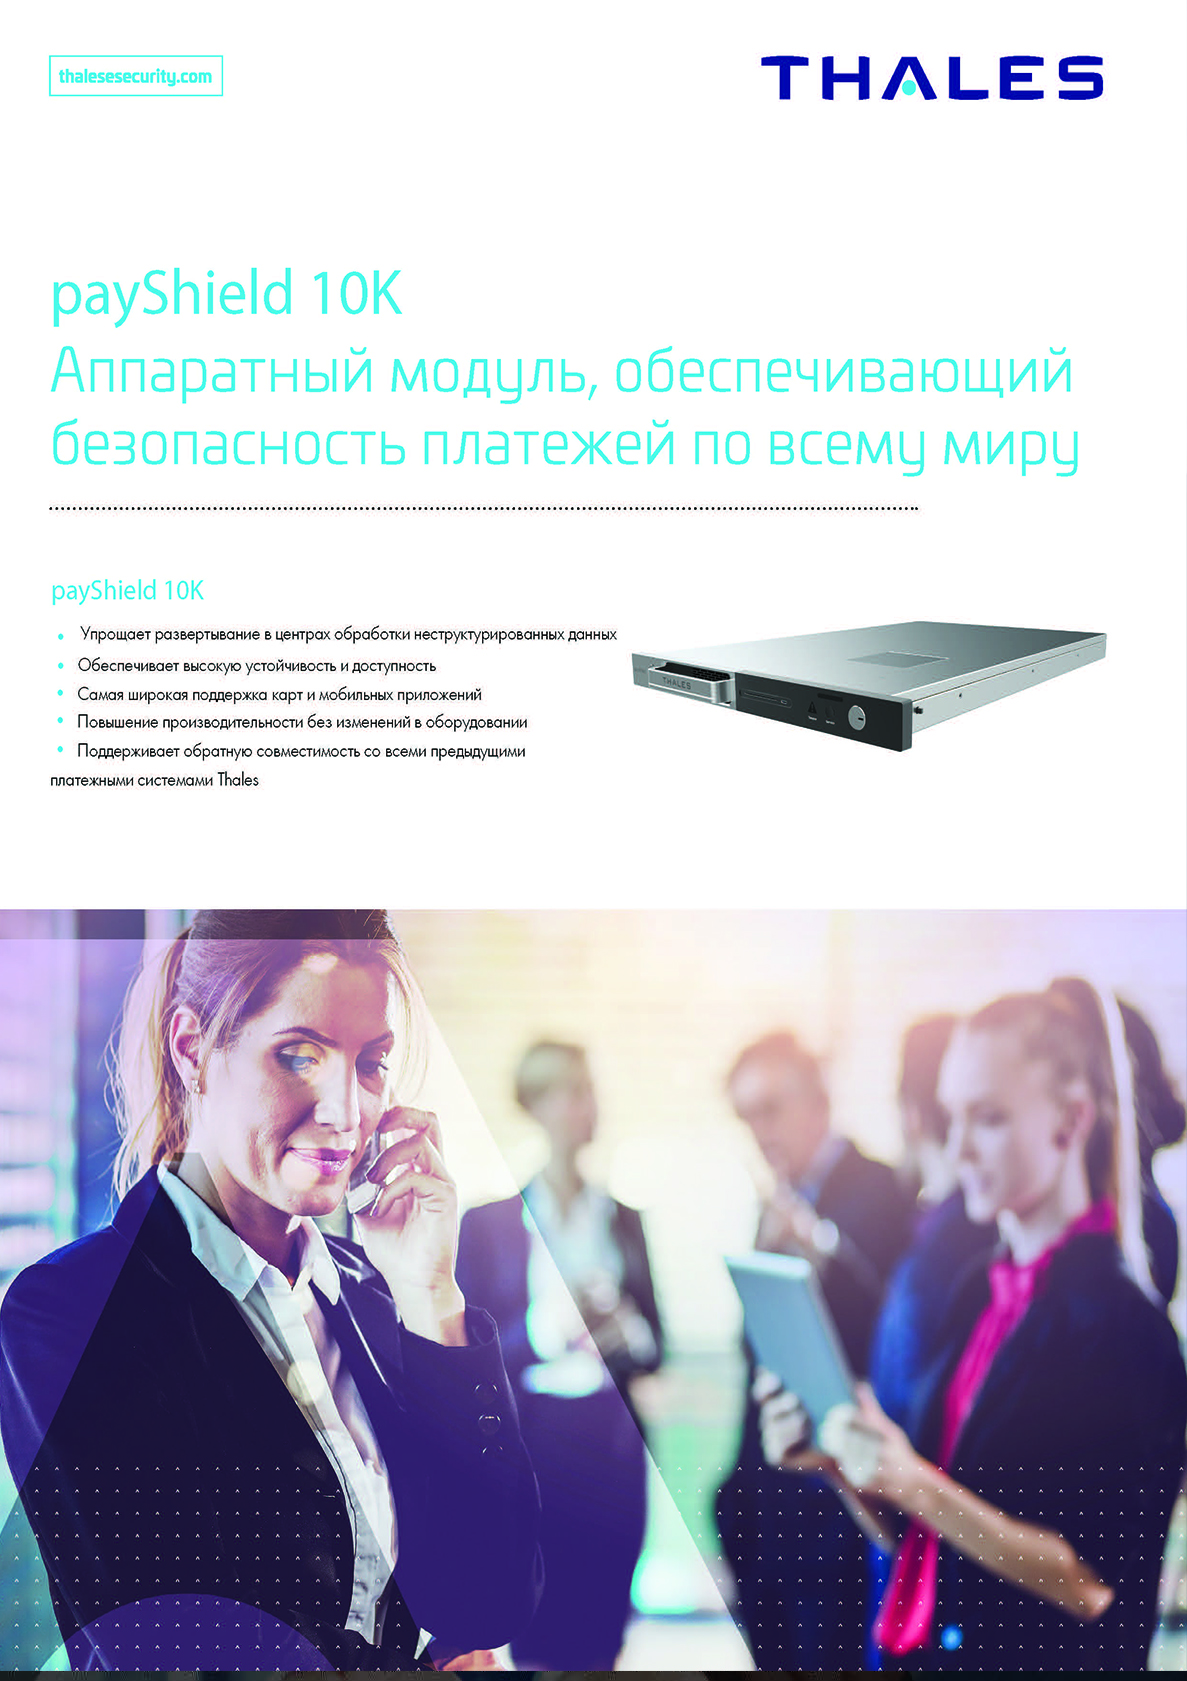 payShield 10K Аппаратный модуль, обеспечивающий безопасность платежей по всему миру